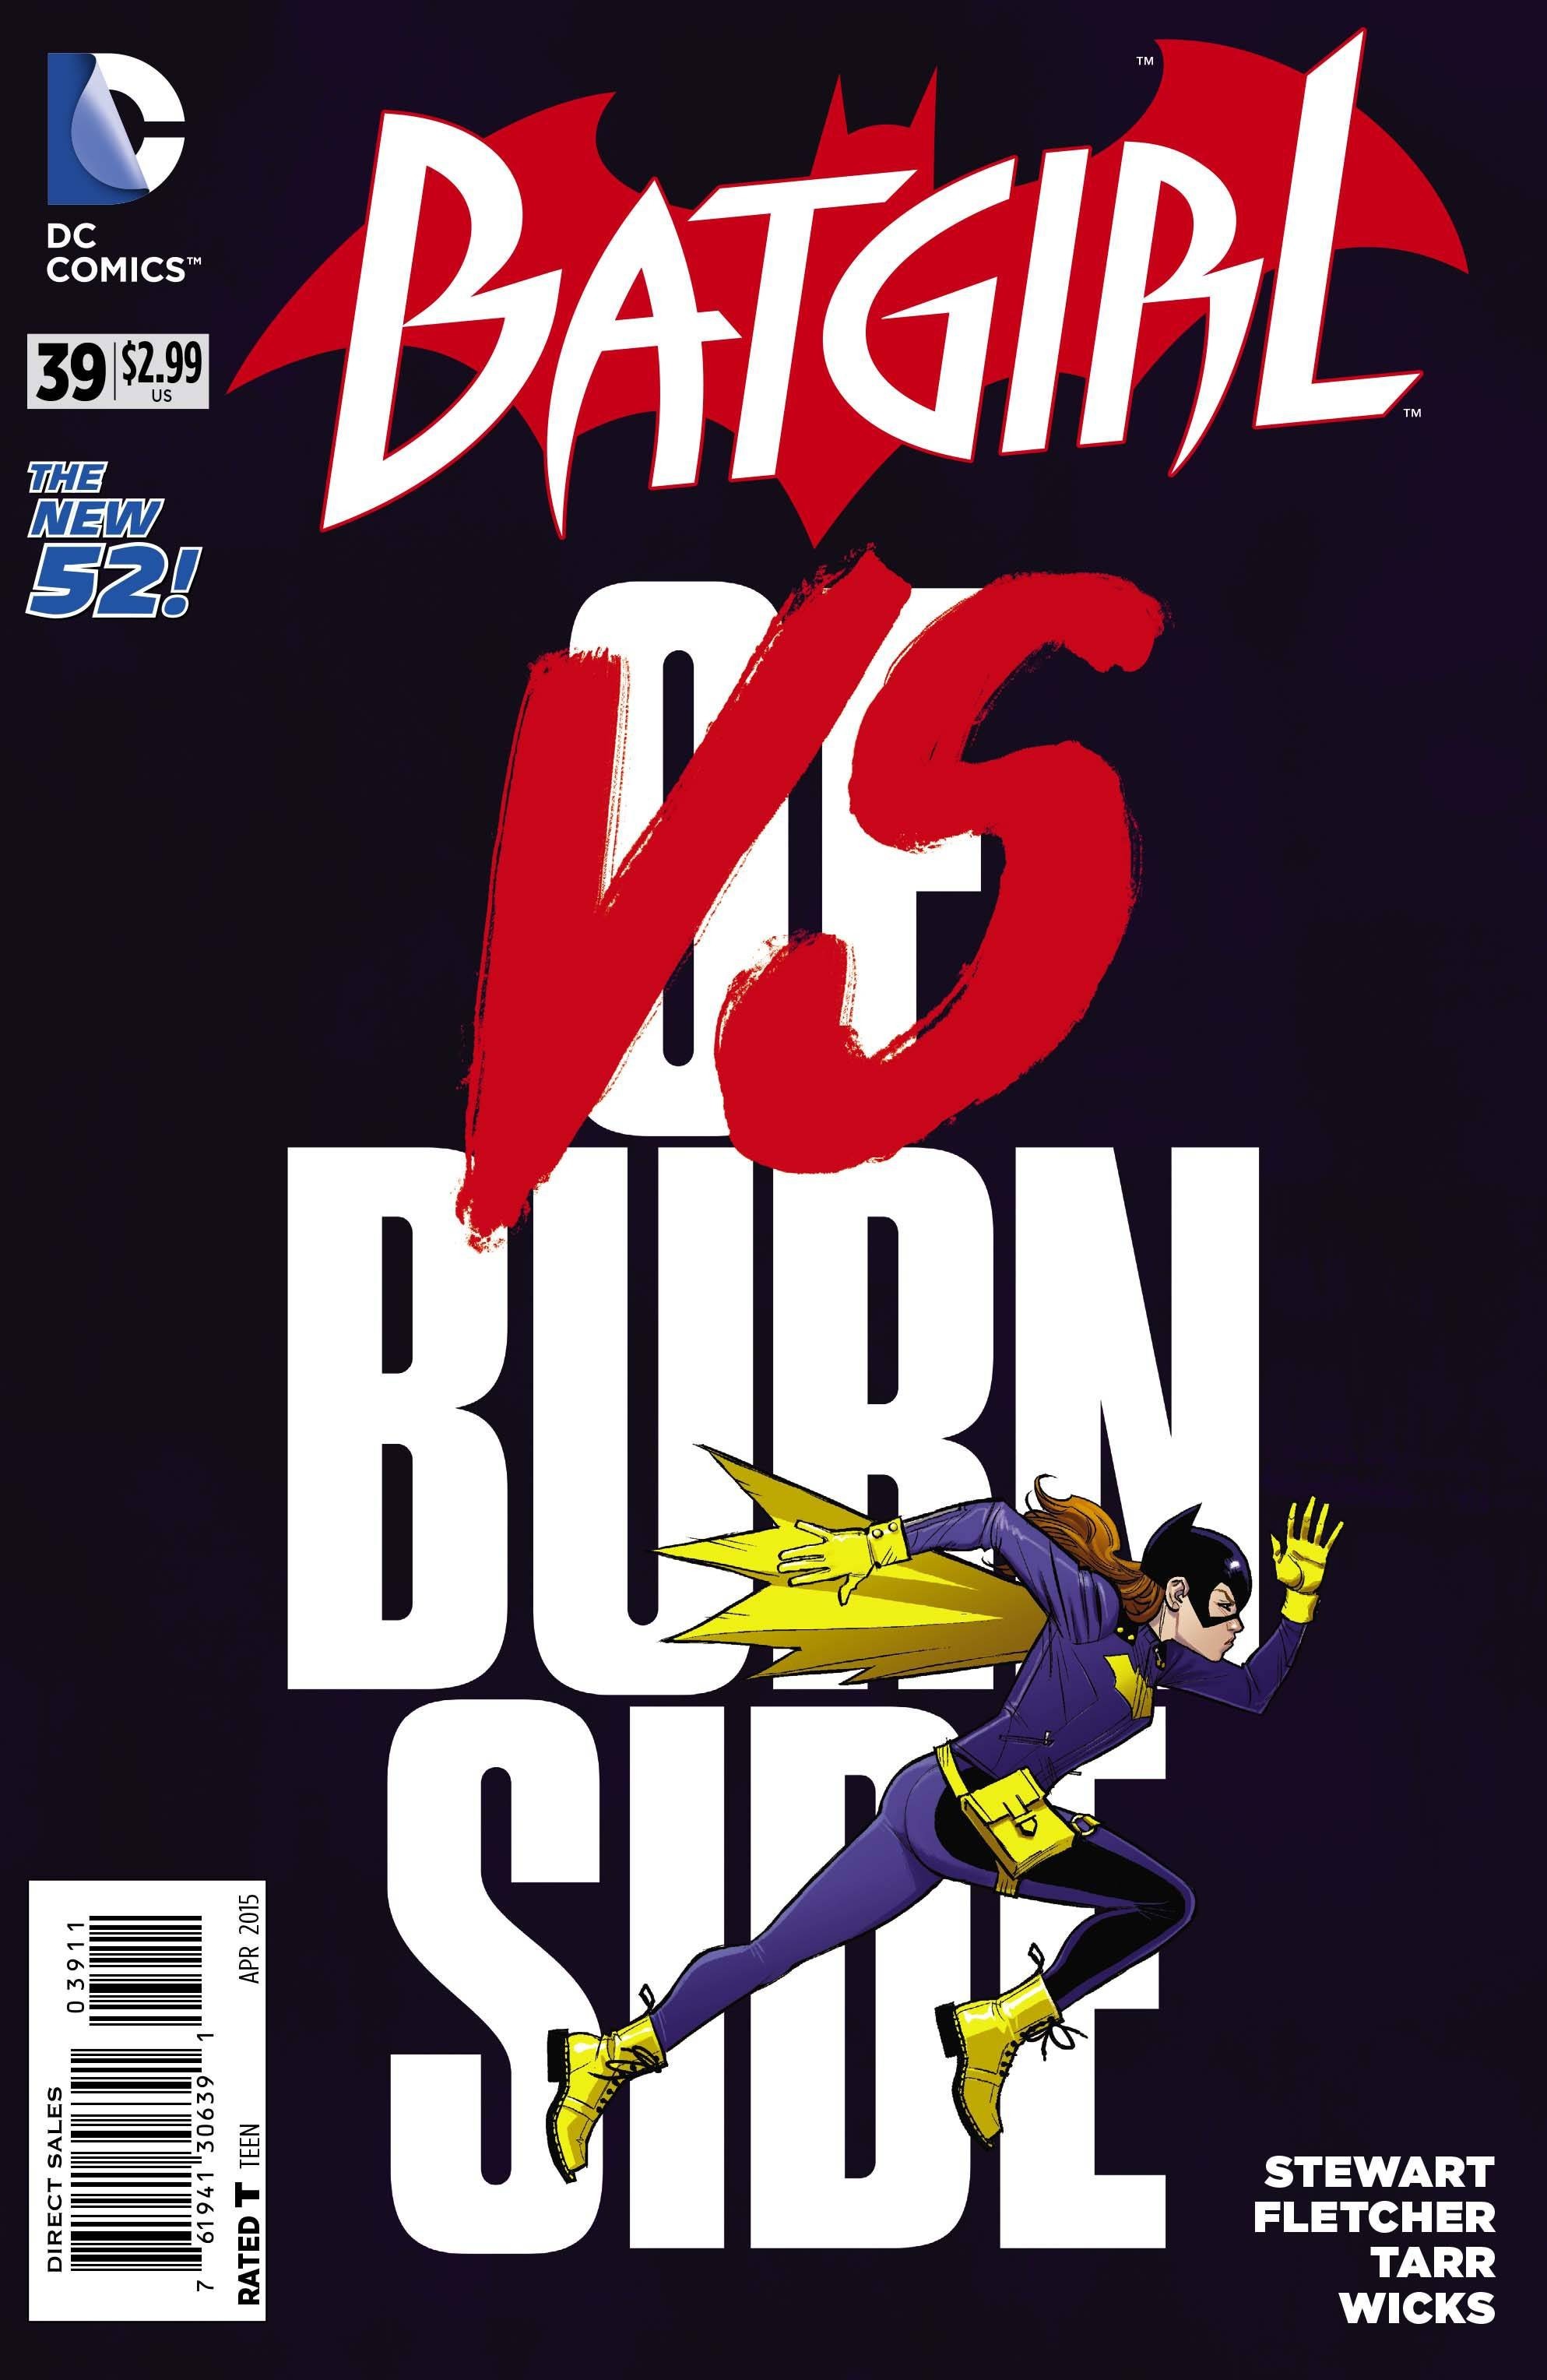 Batgirl Vol. 4 #39